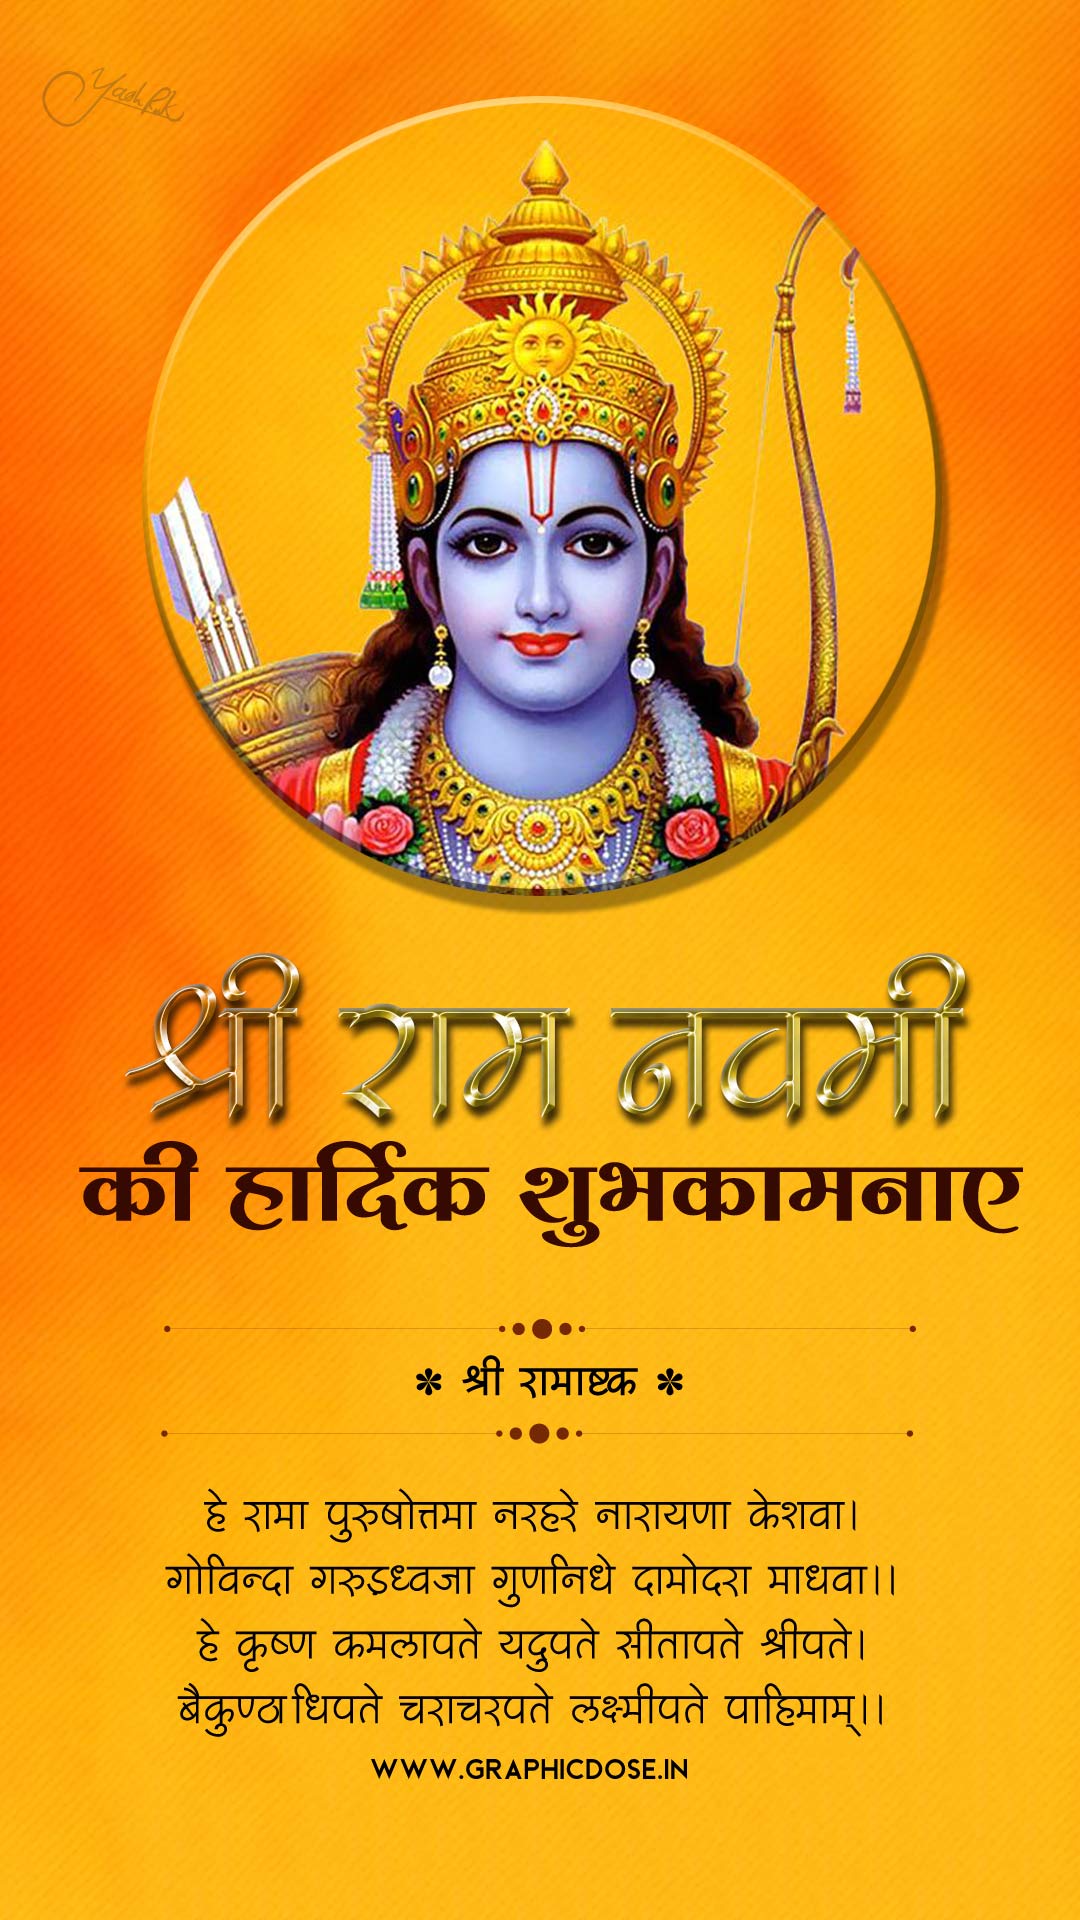 ram navami wishes in sanskrit
